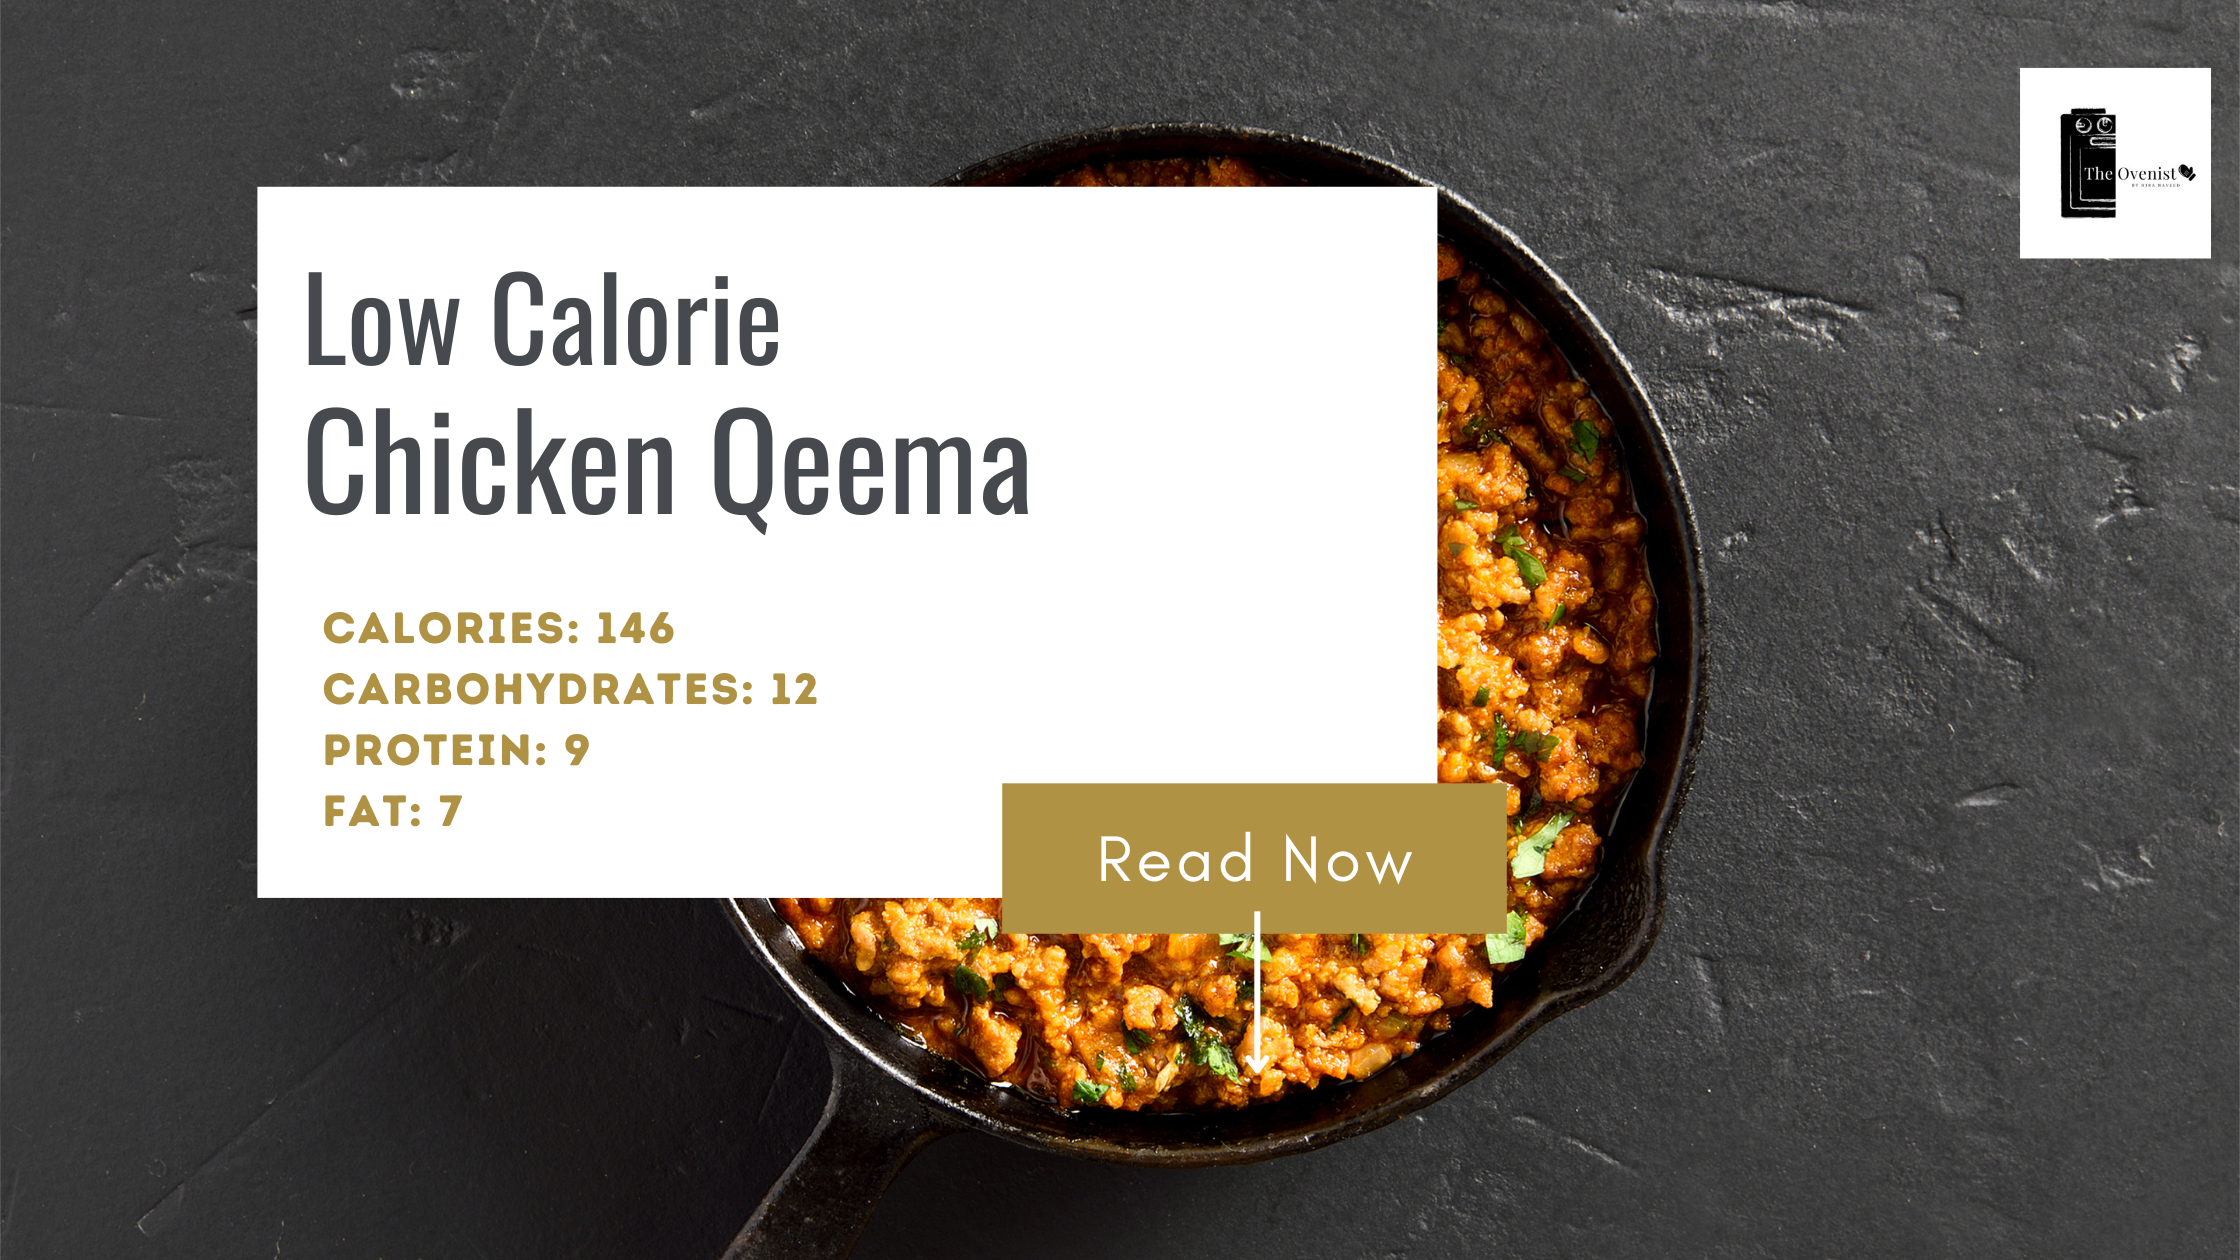 Low Calorie Chicken Qeema